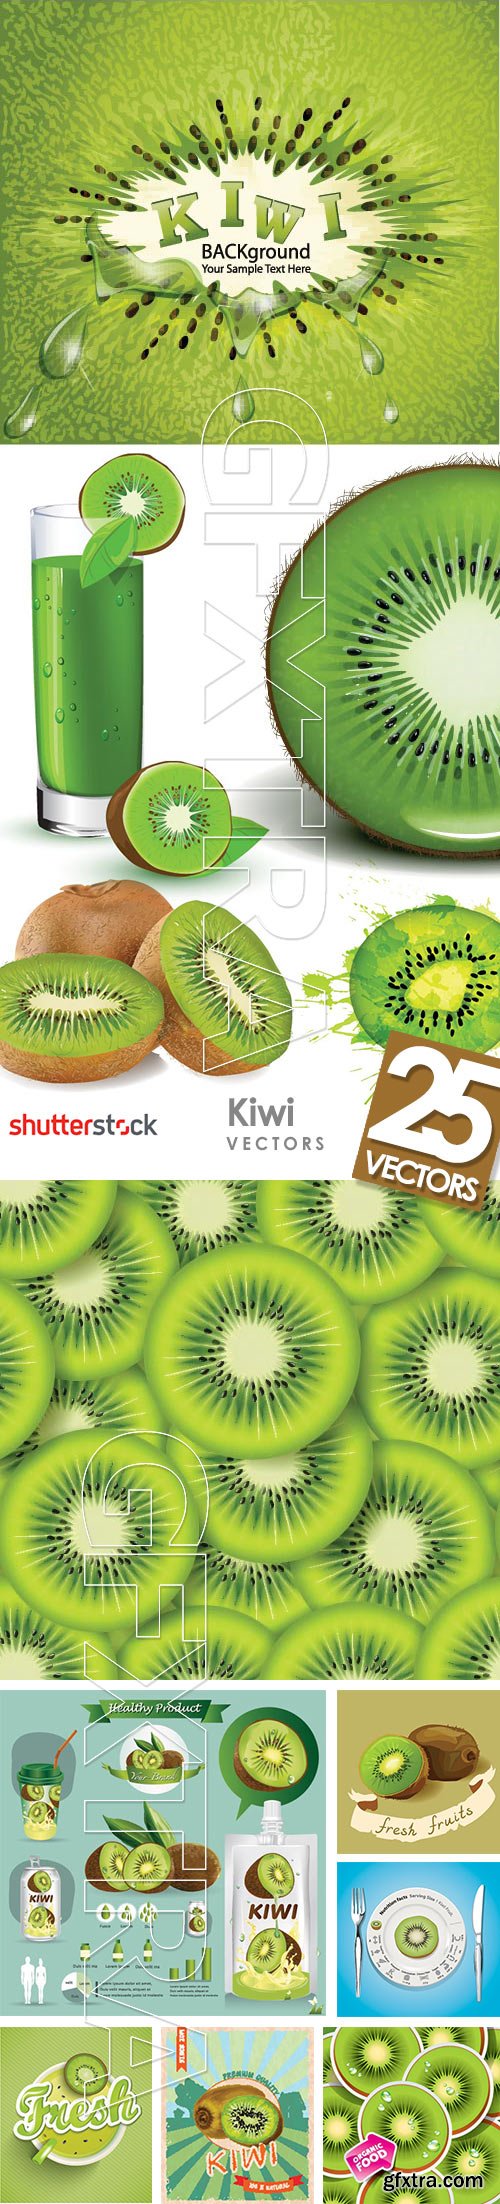 Kiwi Vectors 25xEPS